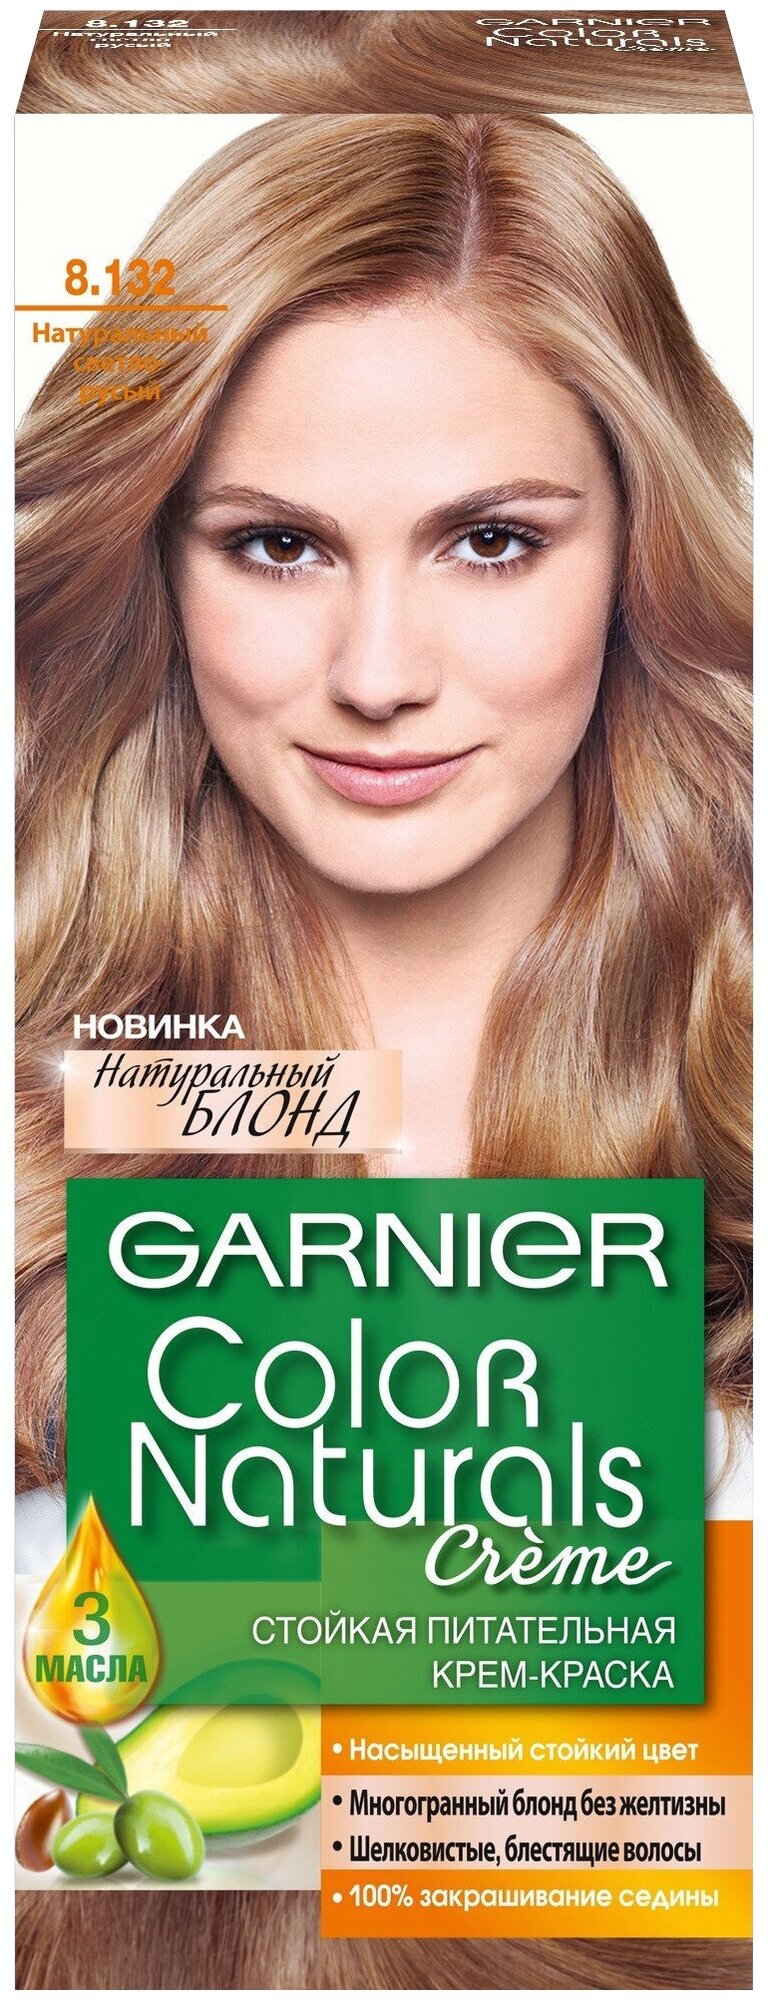 Крем-краска для волос Garnier Color Naturals тон 1 Черный, 112 мл - фото №3